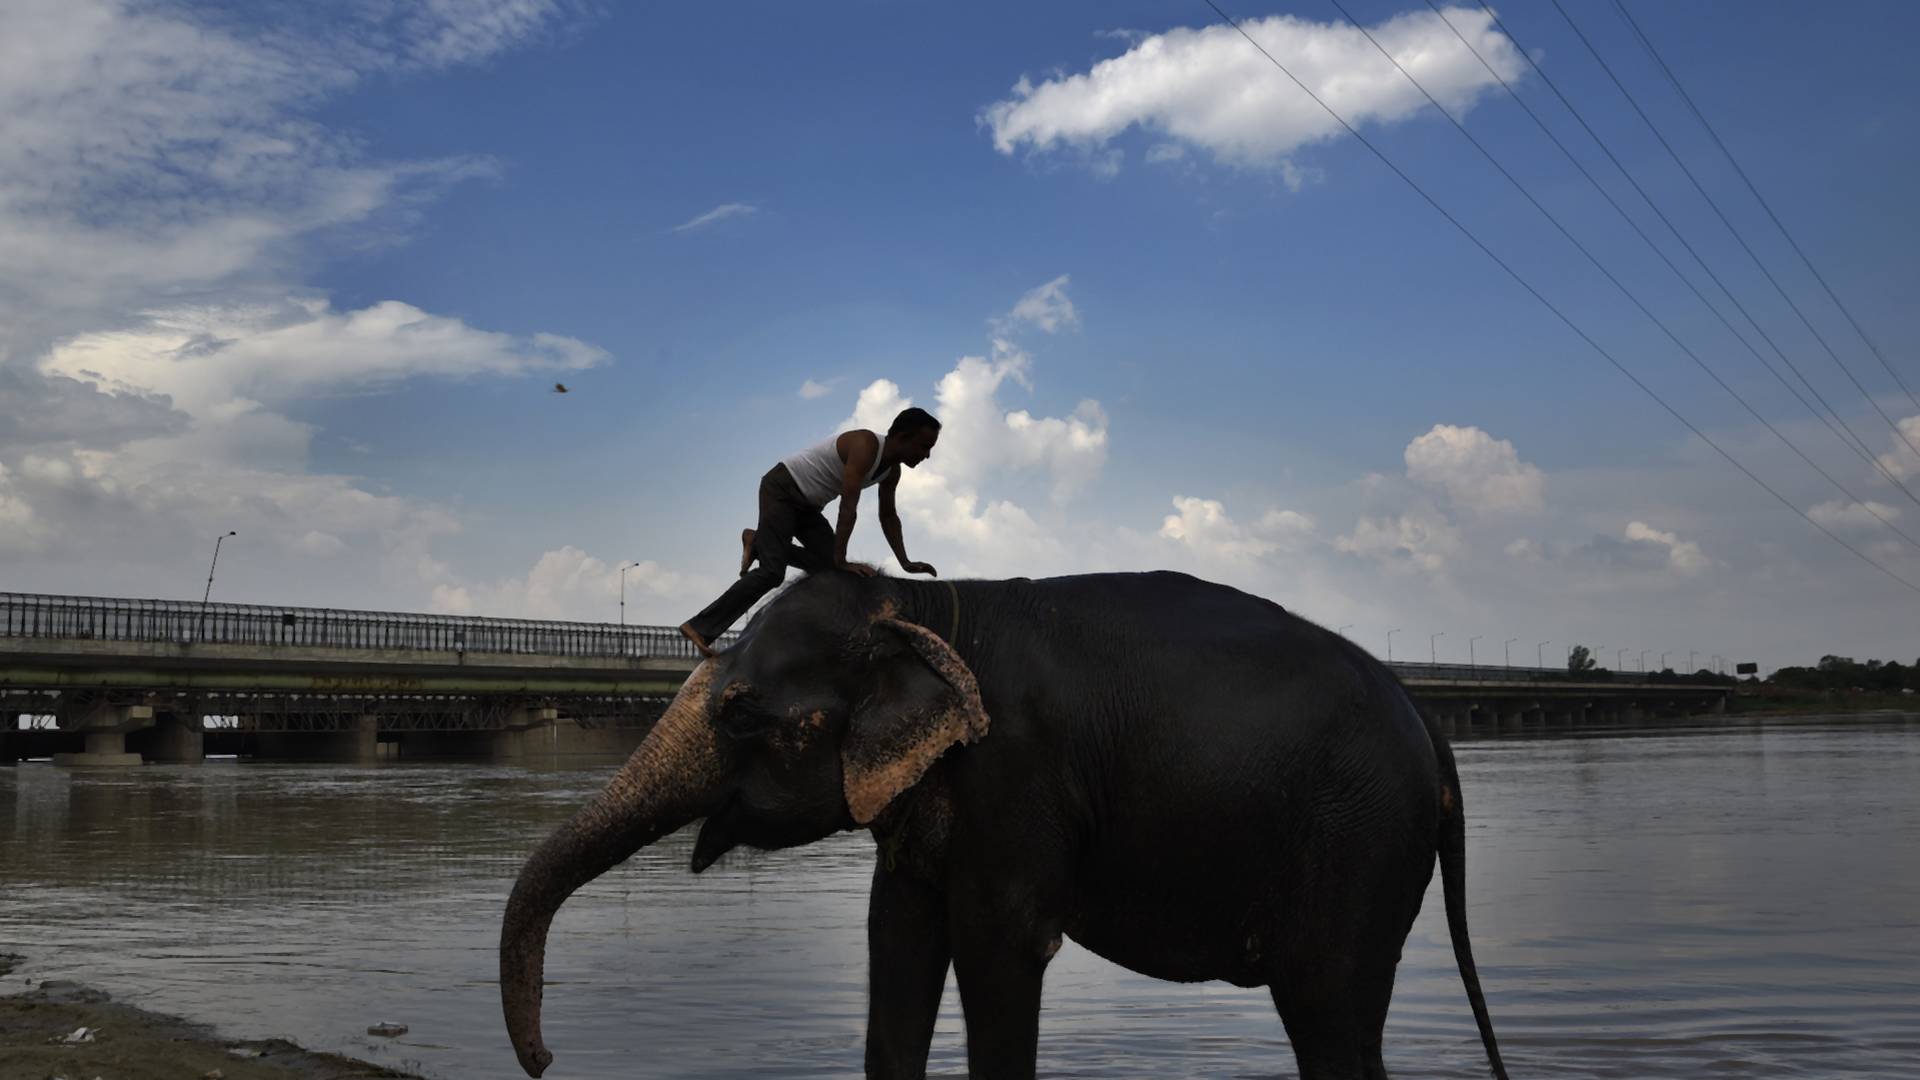 Slony chované pre zábavu v Thajsku hladujú, turisti pre ne znamenali spôsob obživy